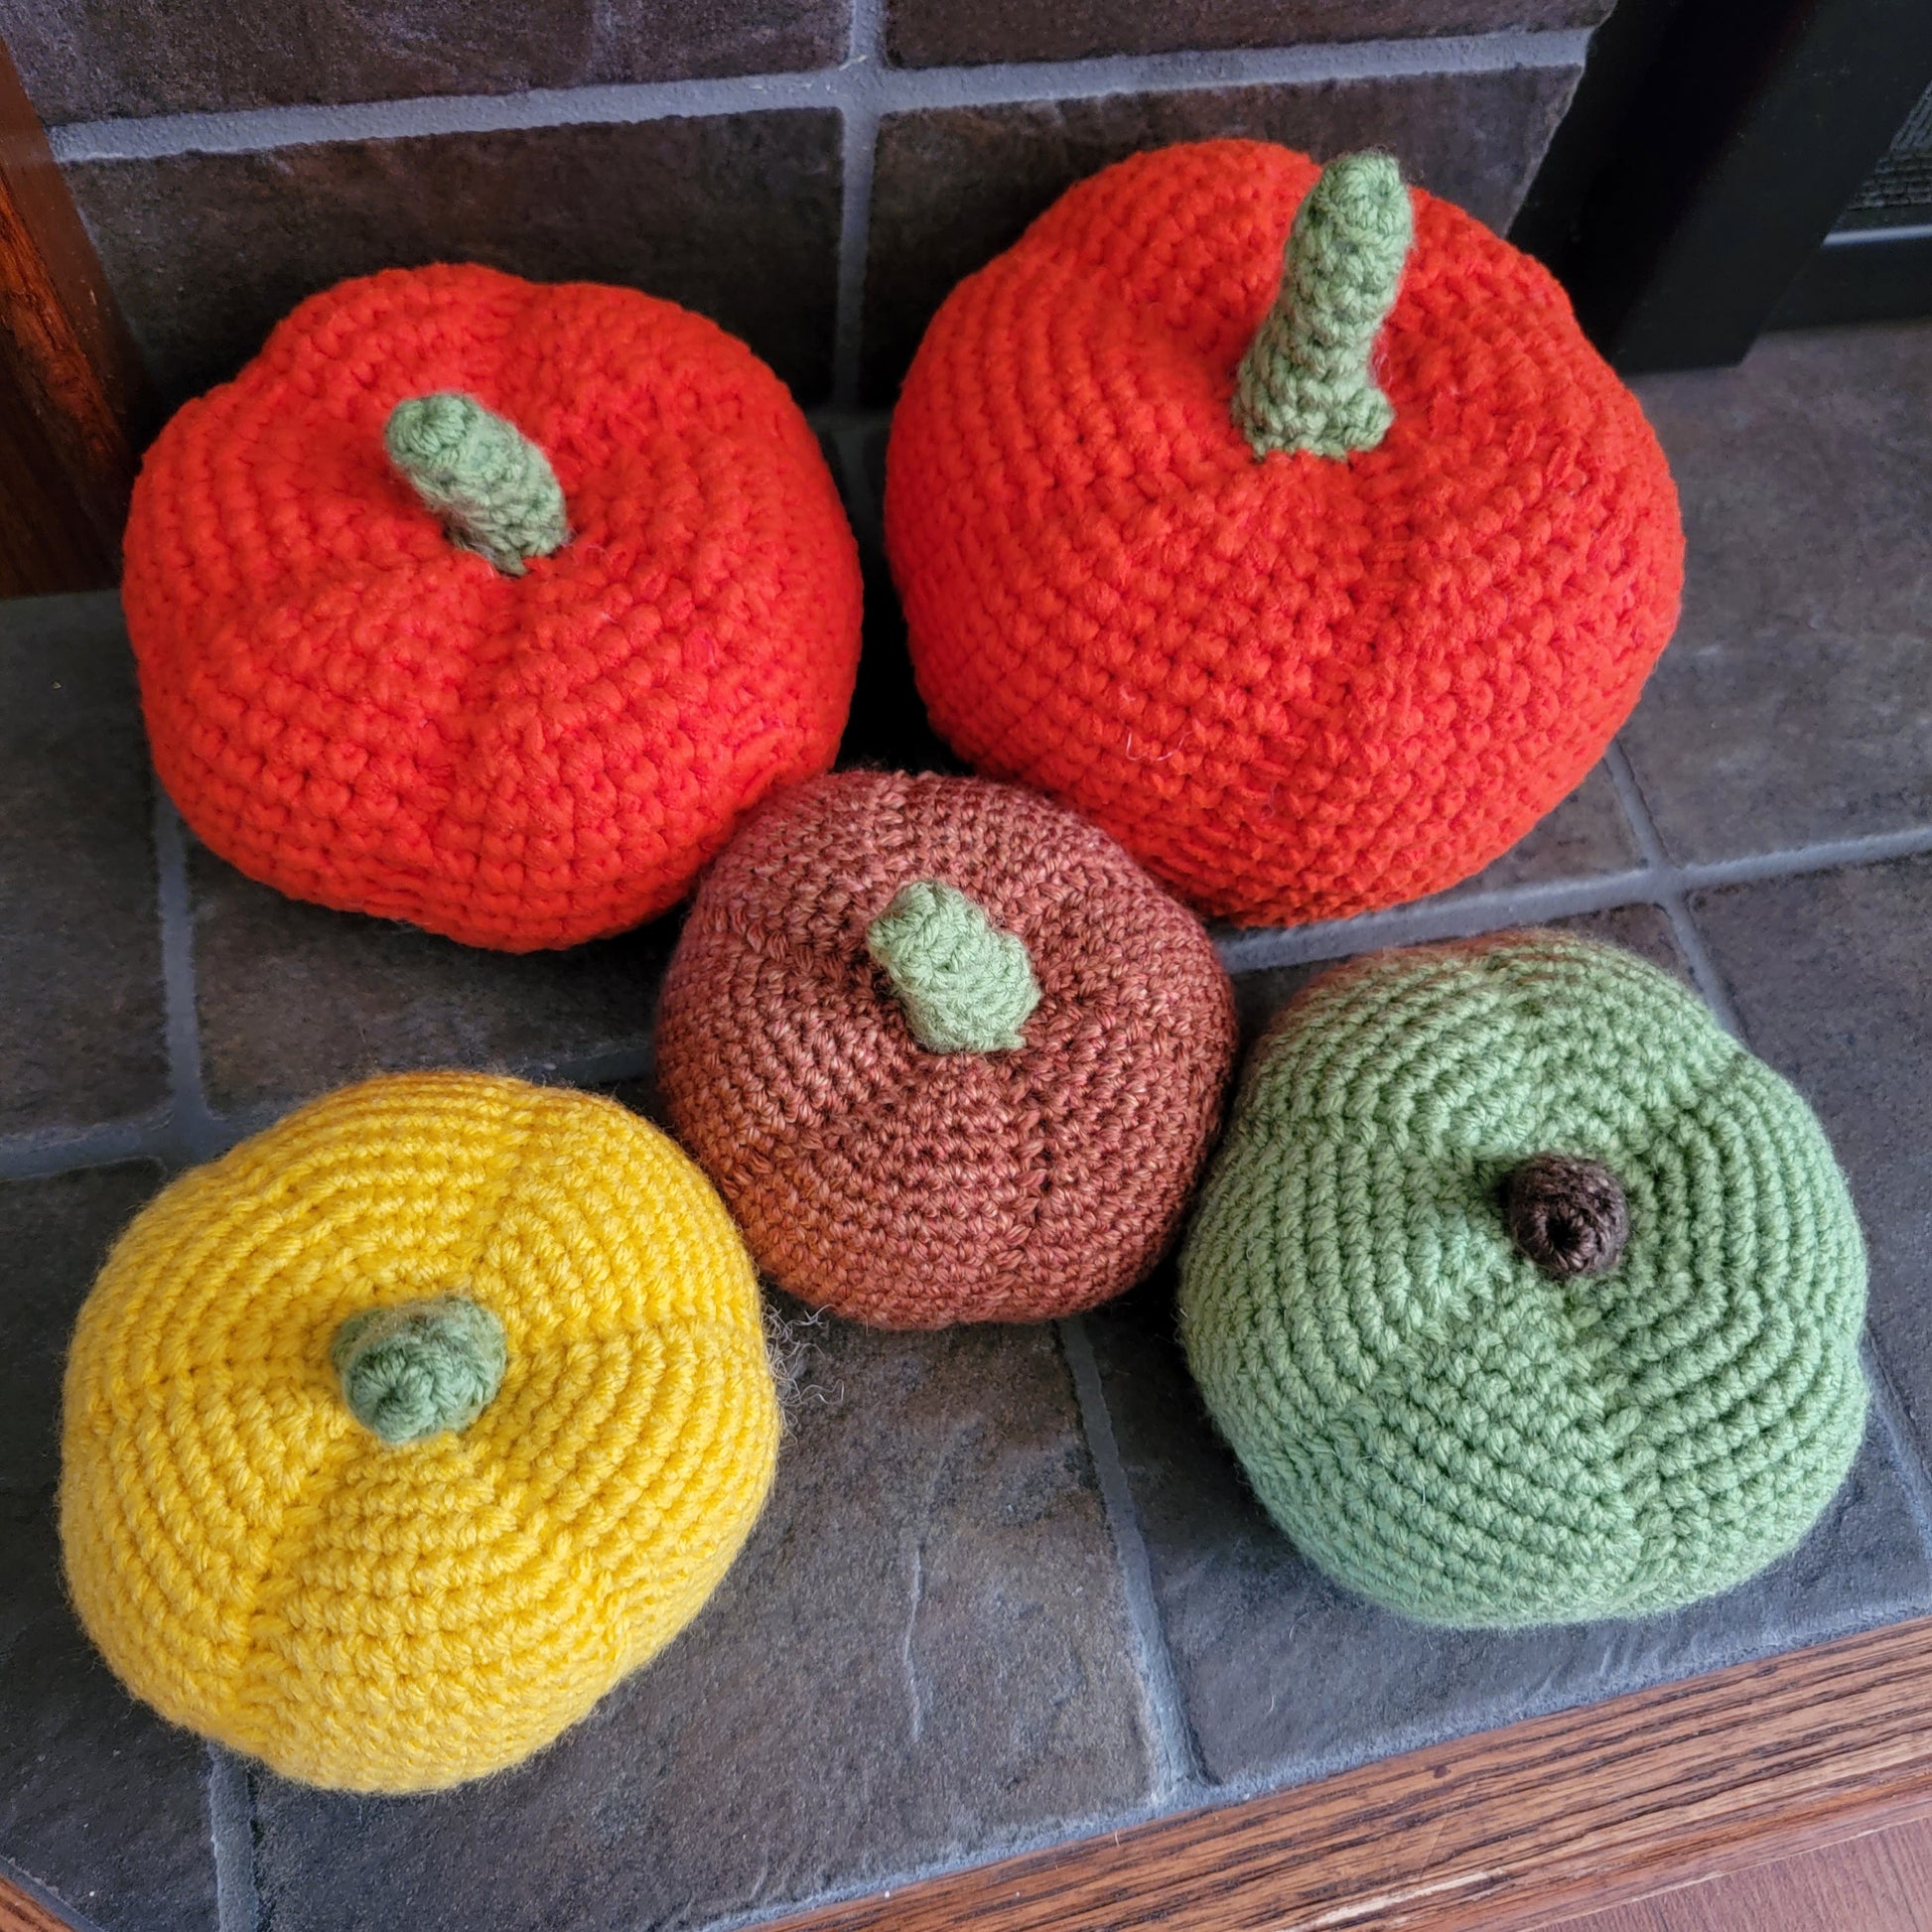 Rustic crochet pumpkins